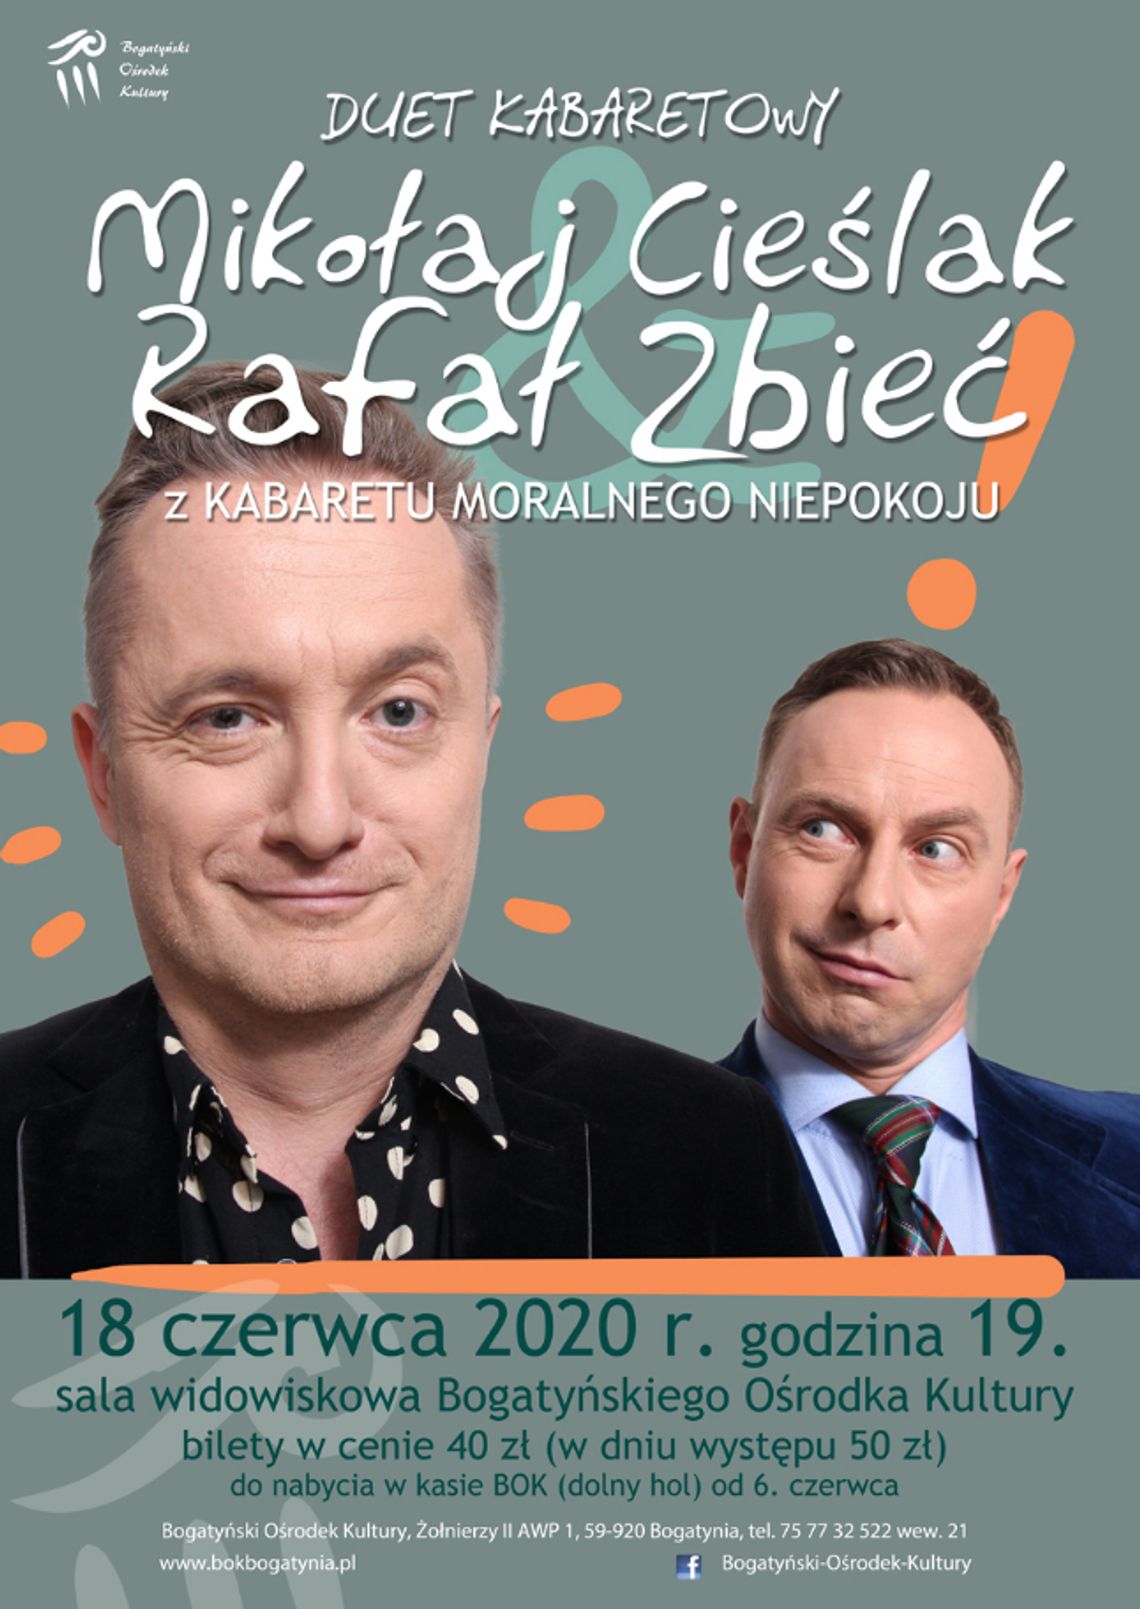 "Mikołaj Cieślak & Rafał Zbieć"